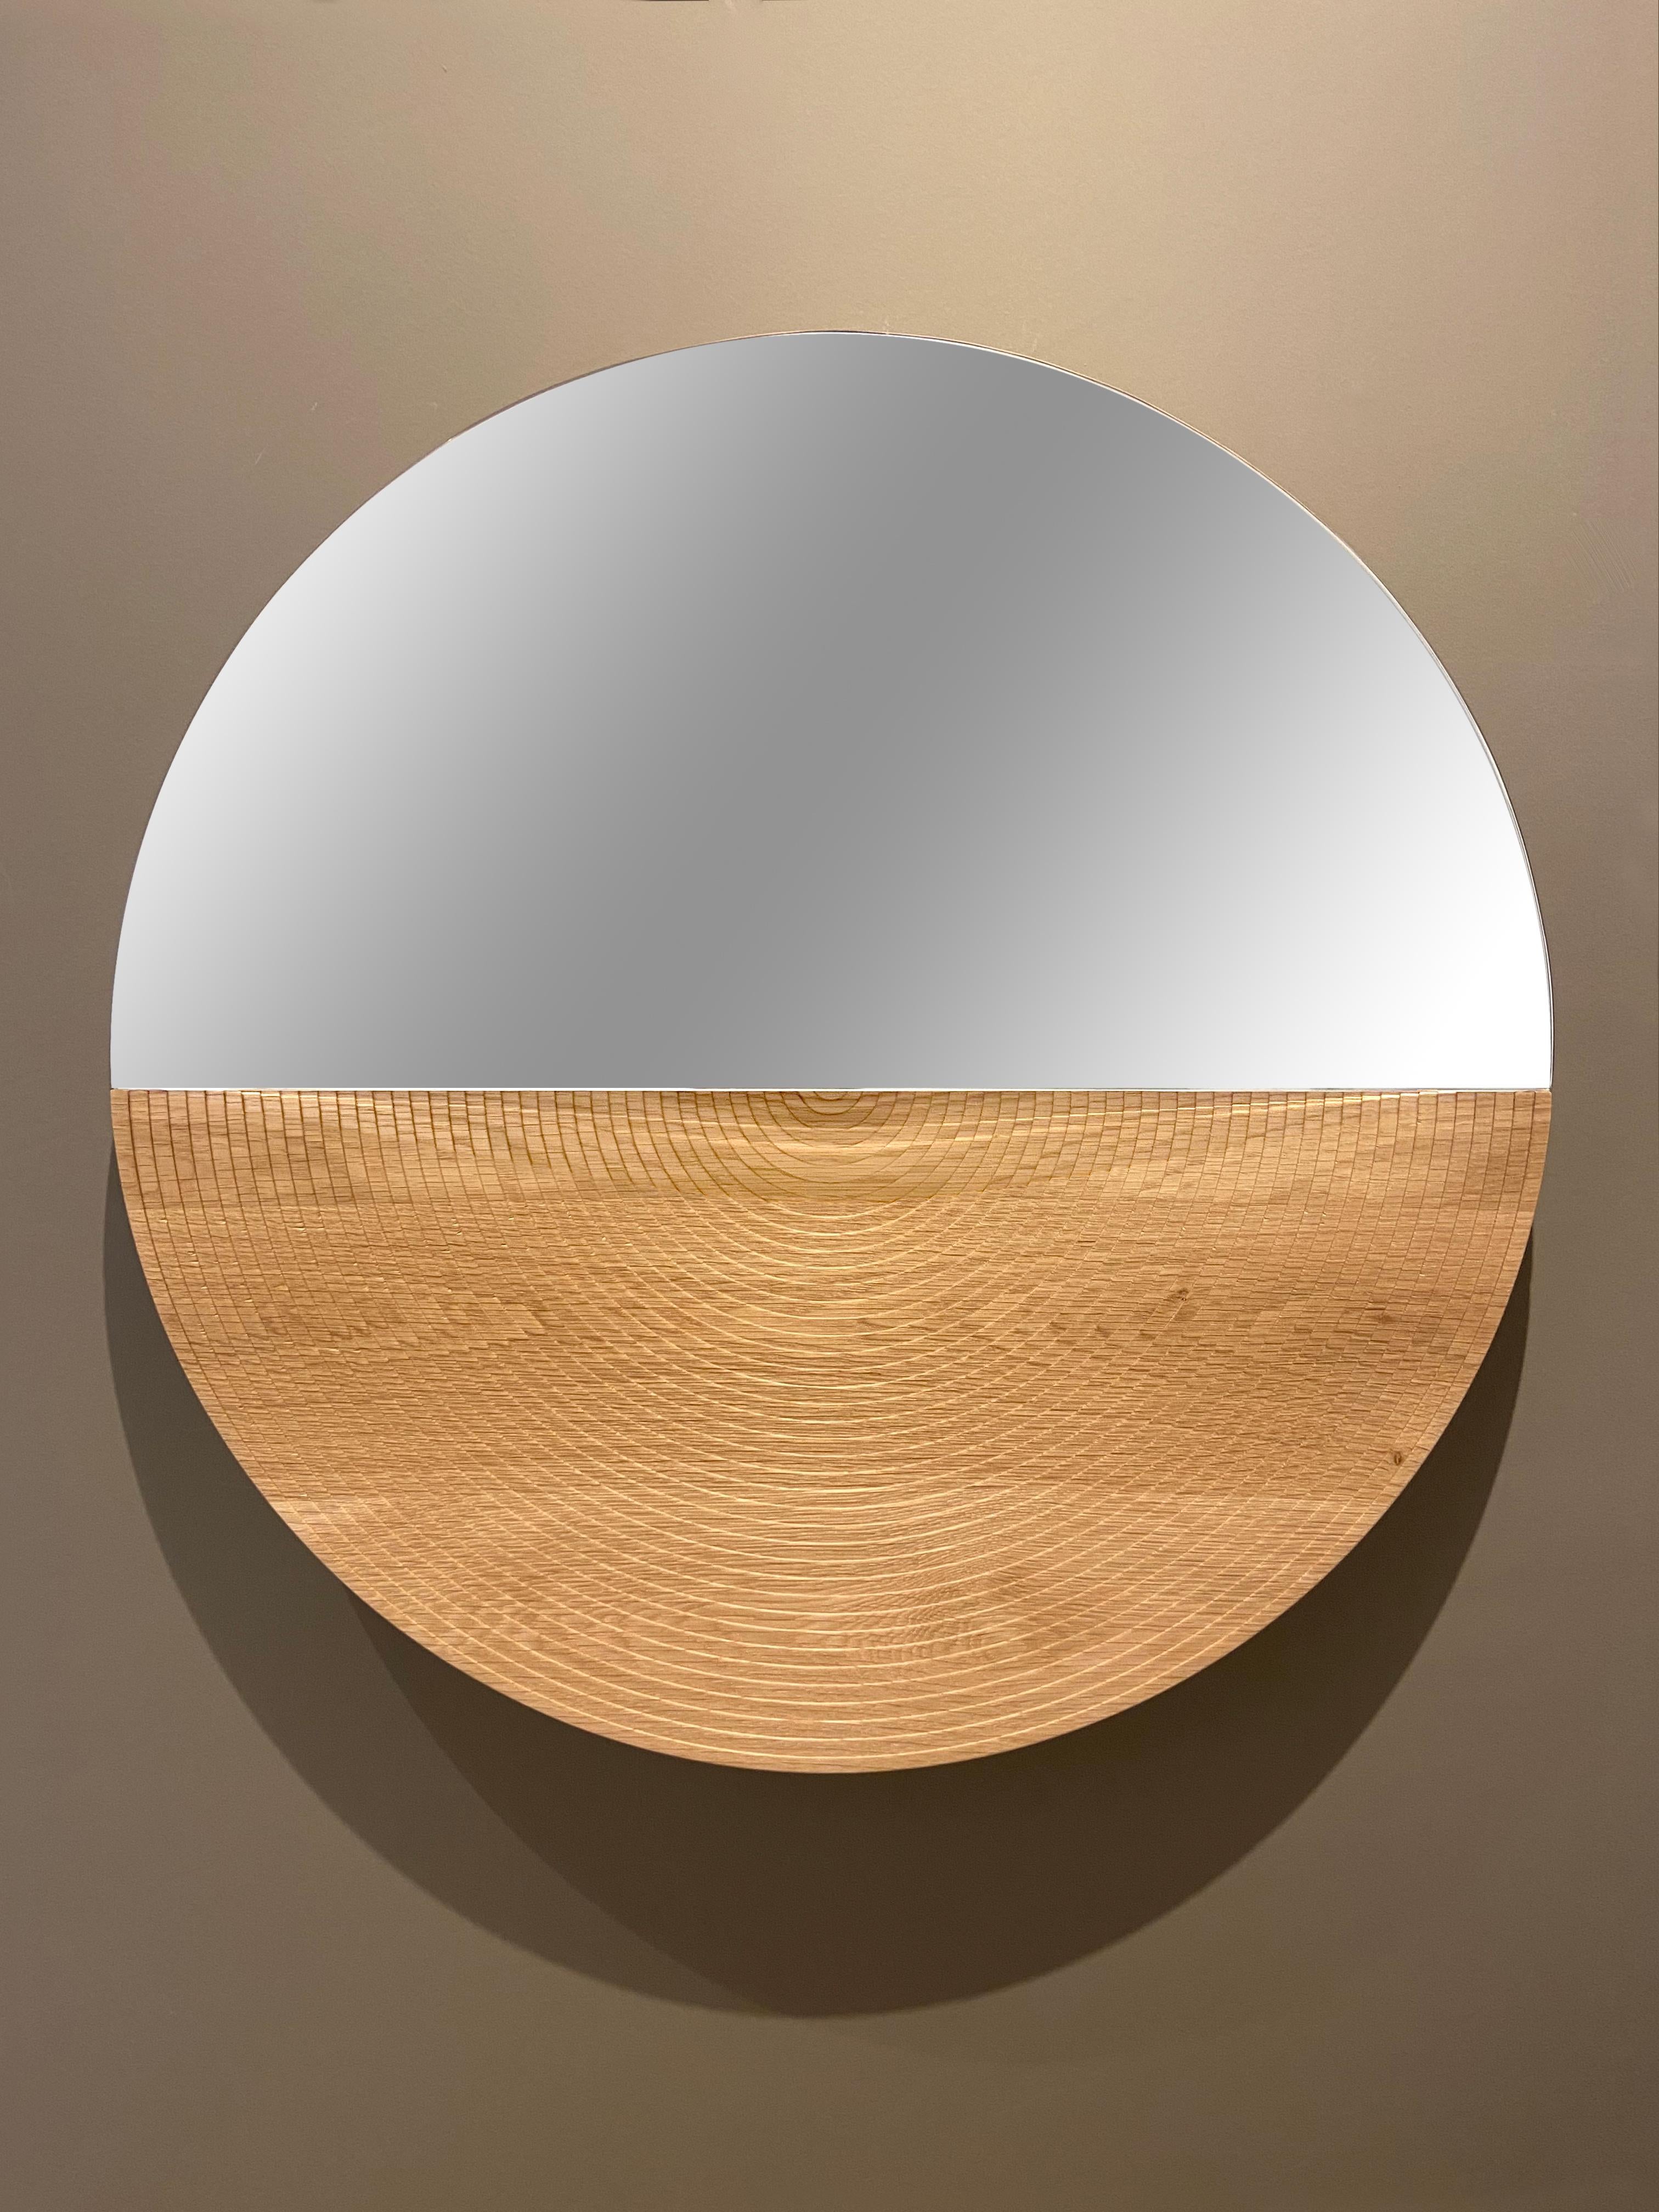 La table miroir Arkhe est une gracieuse combinaison de fonctionnalité, de simplicité et de posture sculpturale. La beauté naturelle du chêne, l'artisanat exquis et l'inspiration provenant des magnifiques amphithéâtres d'Olde Time confèrent à ce